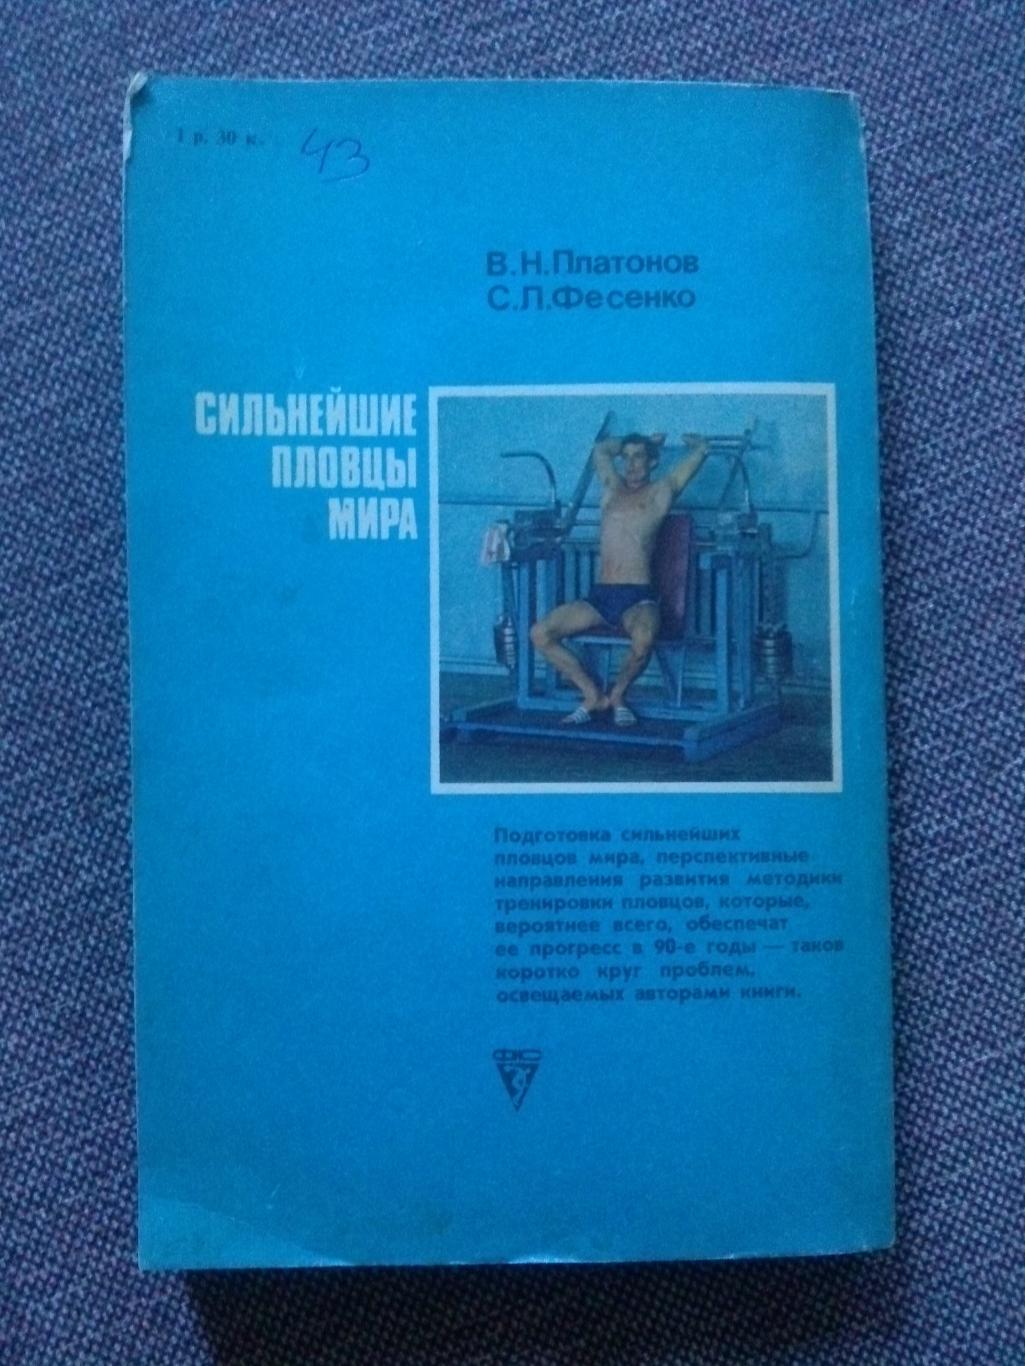 В.Н. Платонов , С.П. Фесенко - Сильнейшие пловцы мира 1990 г. ФиС Плавание 1